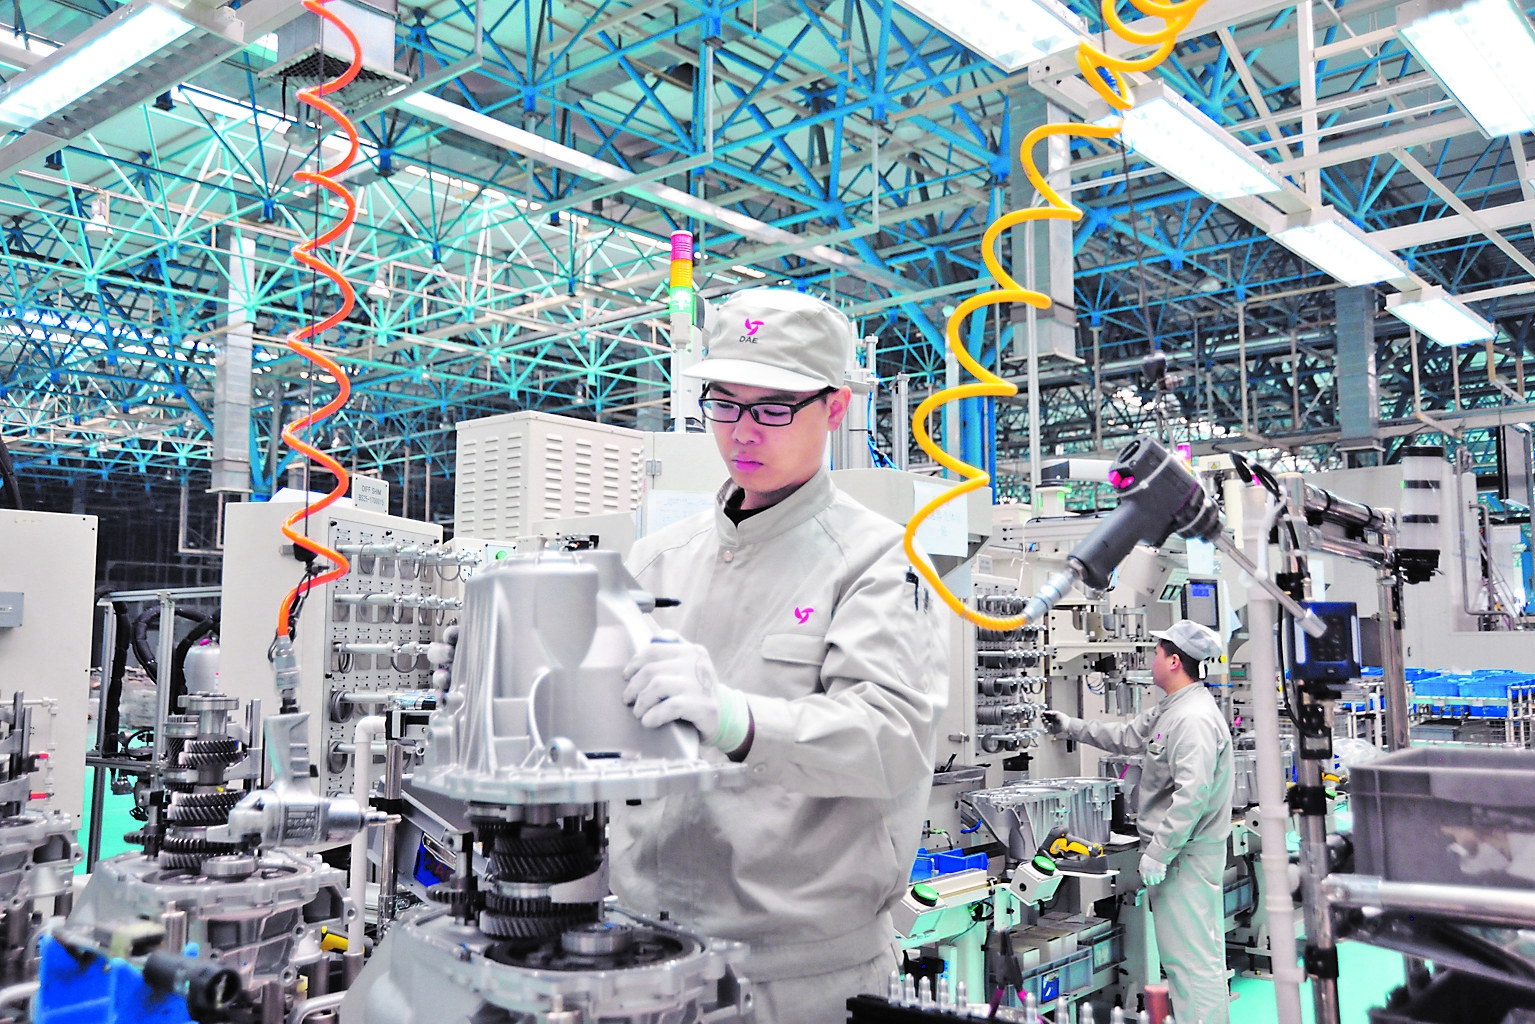 哈尔滨东安汽车发动机有限公司(dae)智能车间工人正在工作.